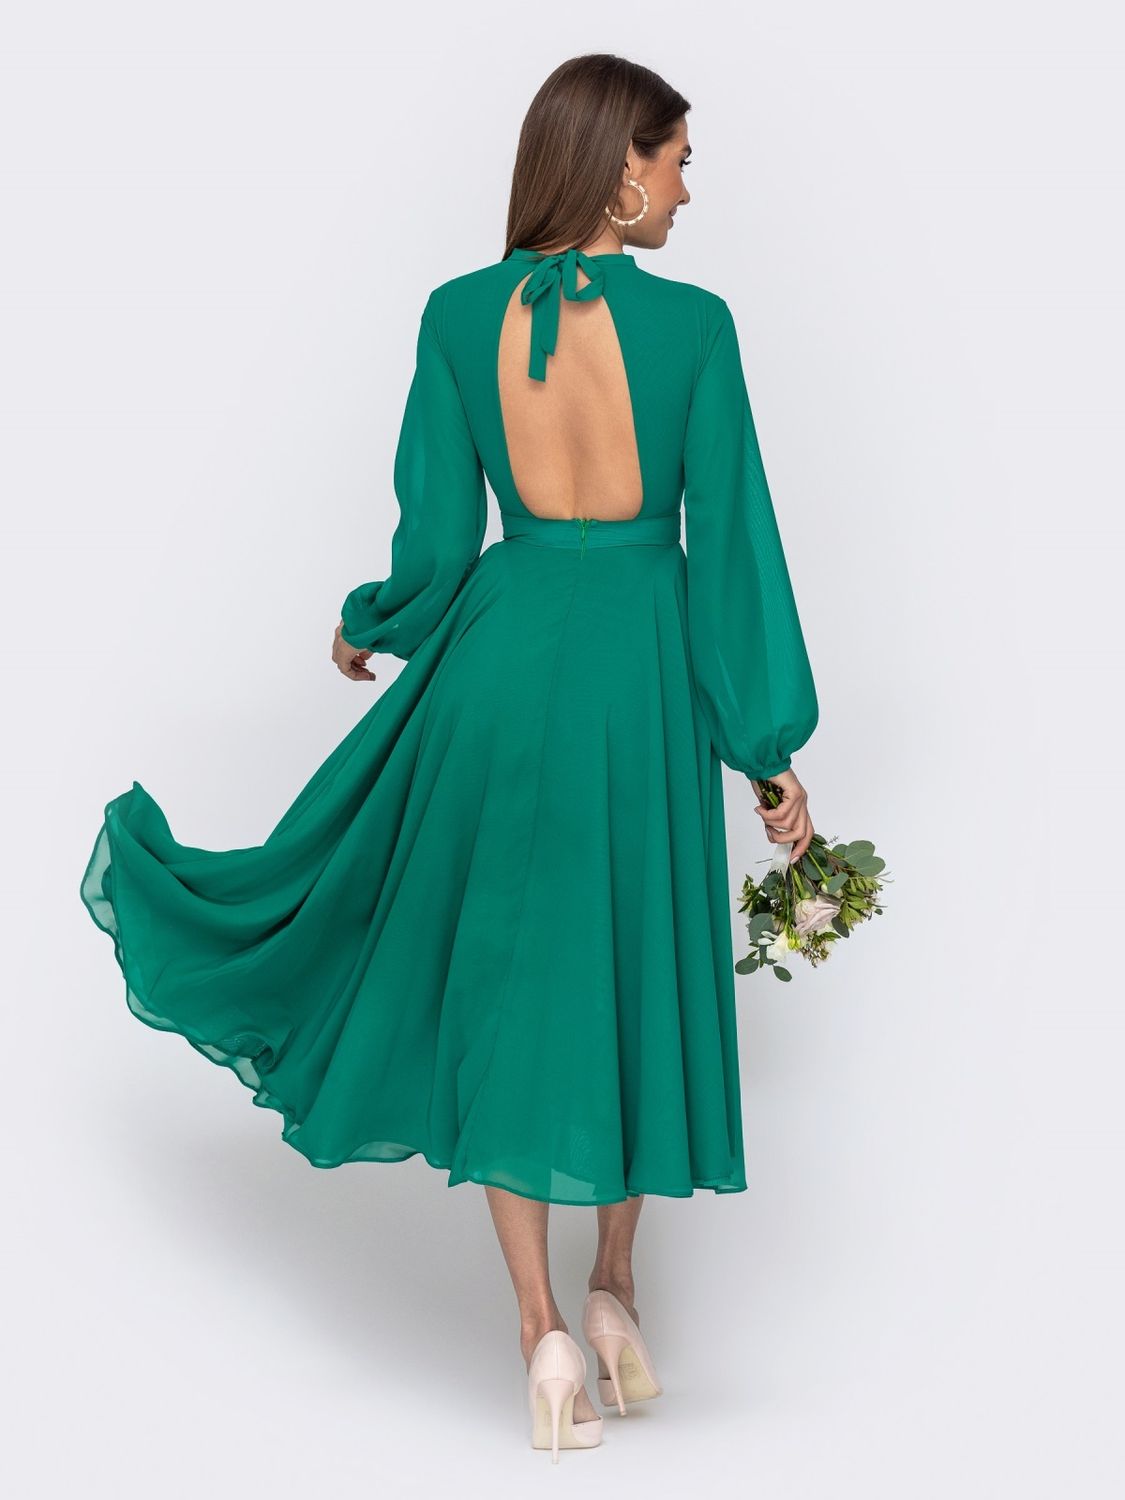 Нарядне шифонове плаття зі спідницею-сонце зеленого кольору - фото